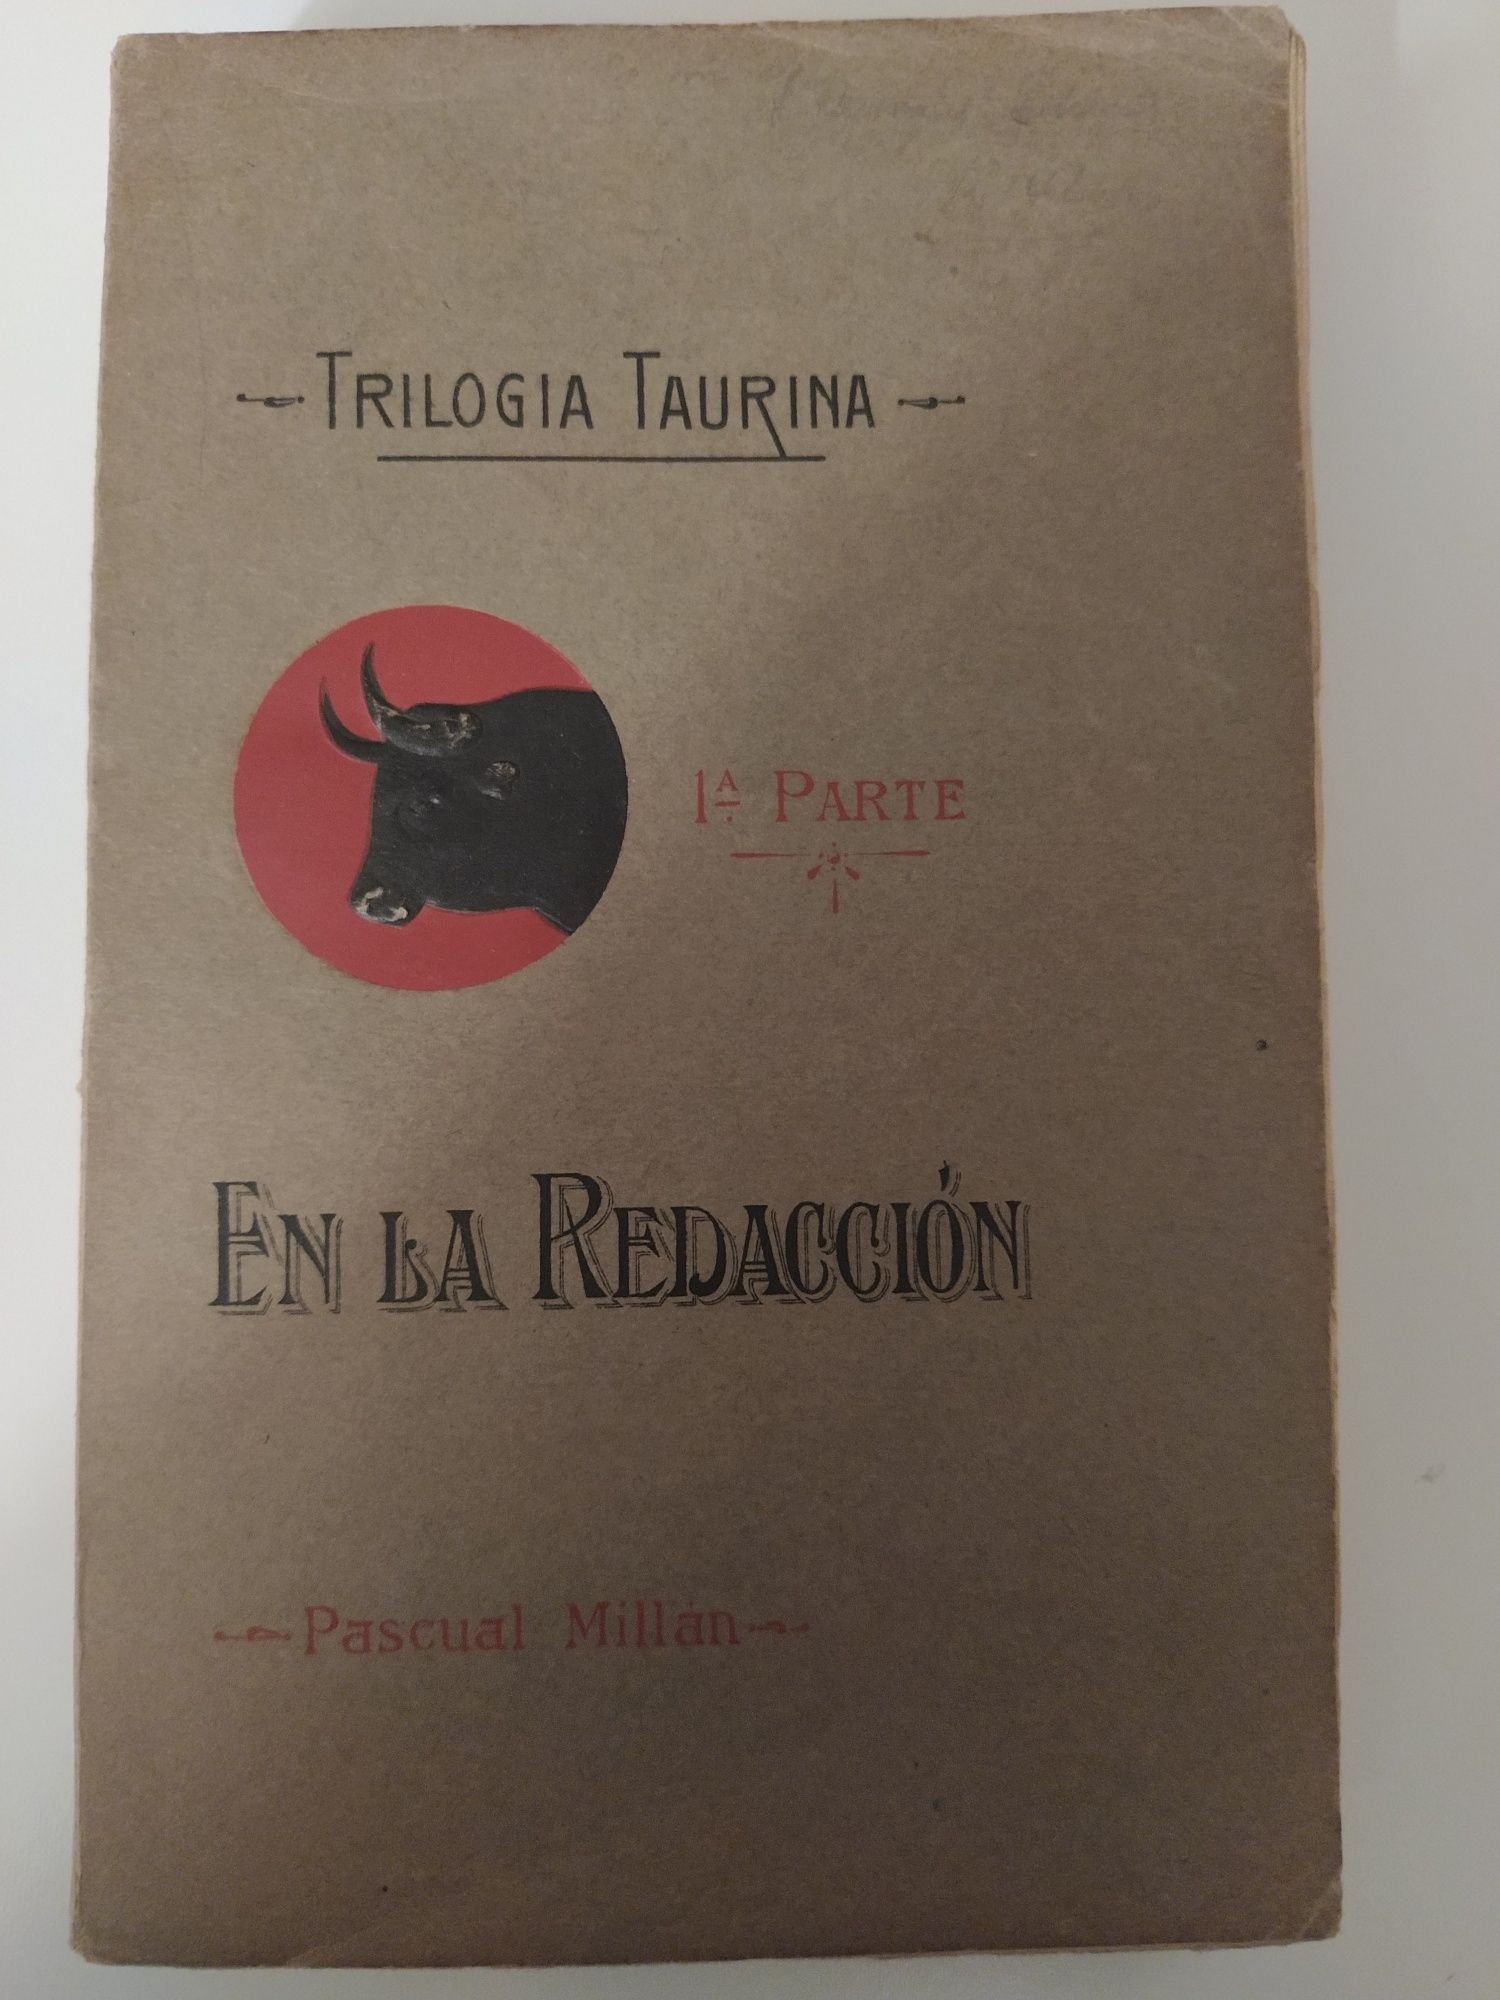 Trilogia Taurina - En la Redacción (1a parte)